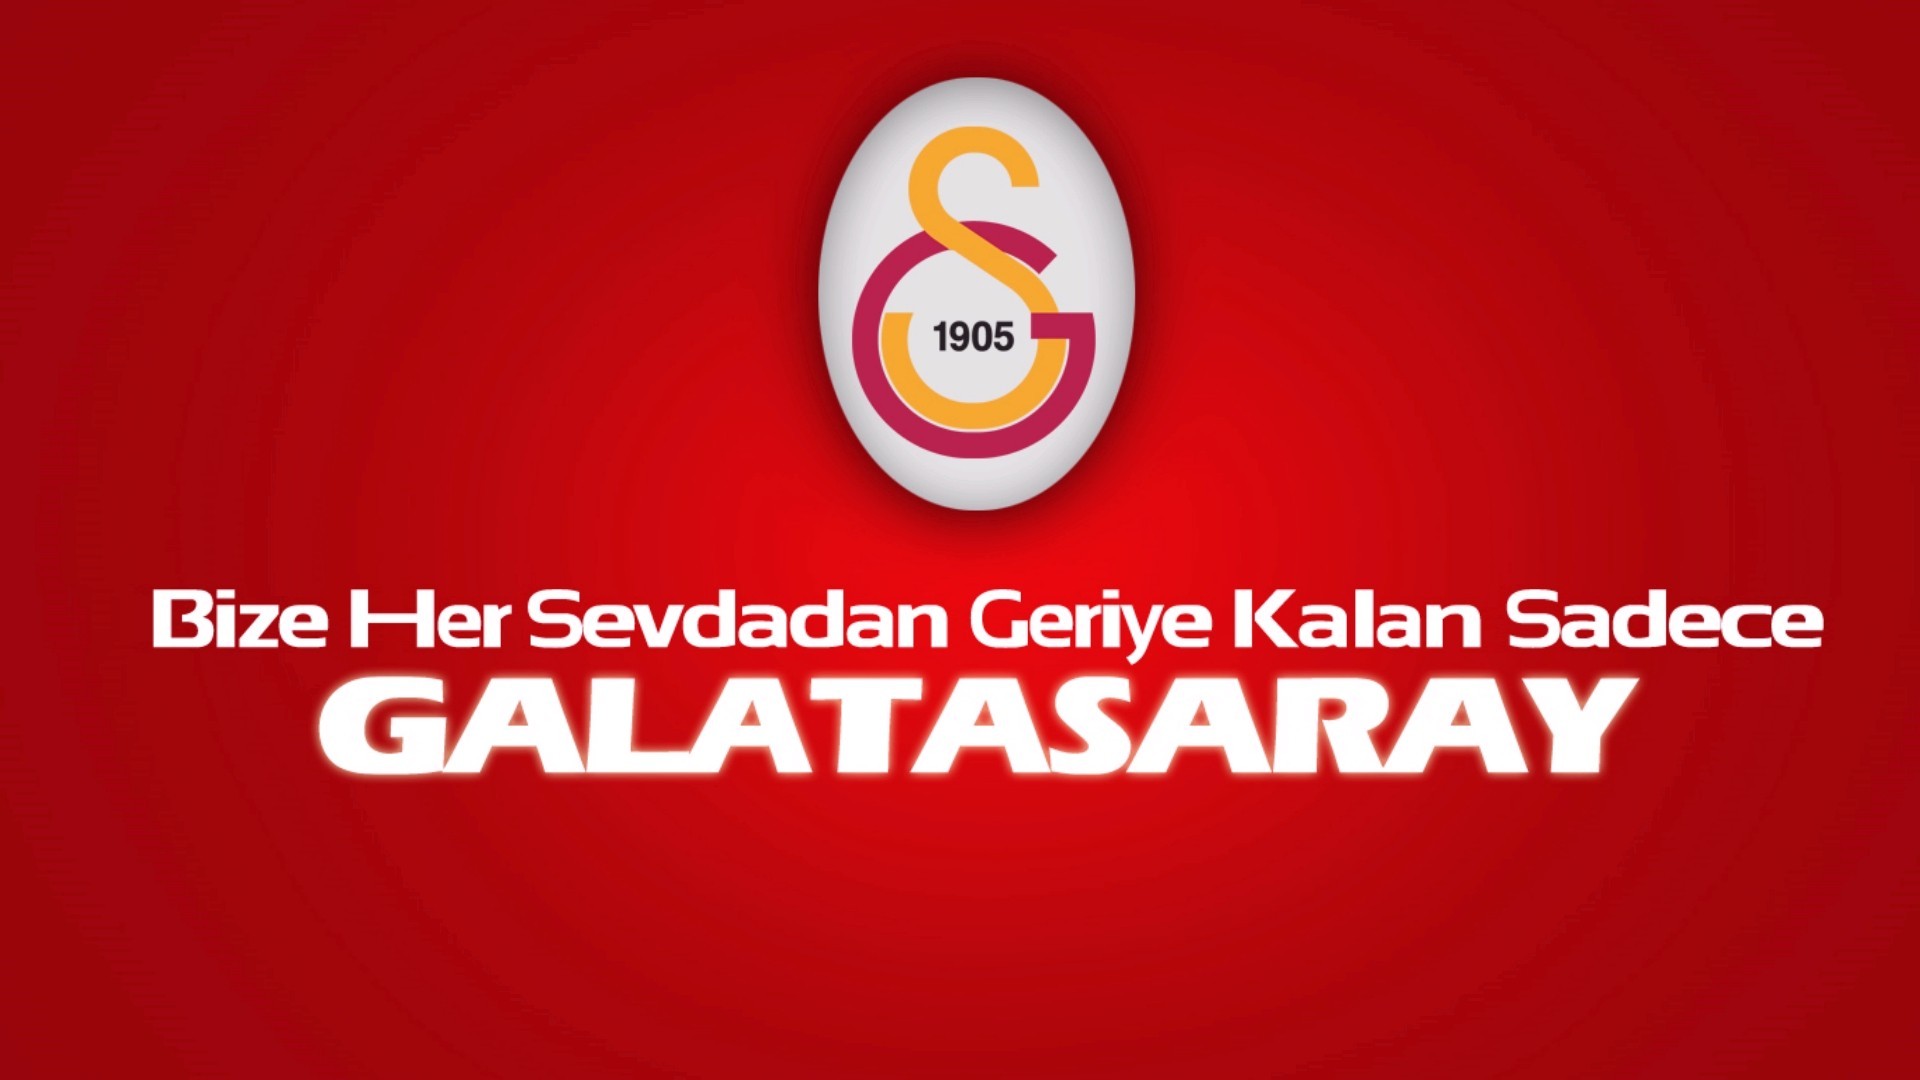 Обои смс логотип Галатасарай С К на рабочий стол